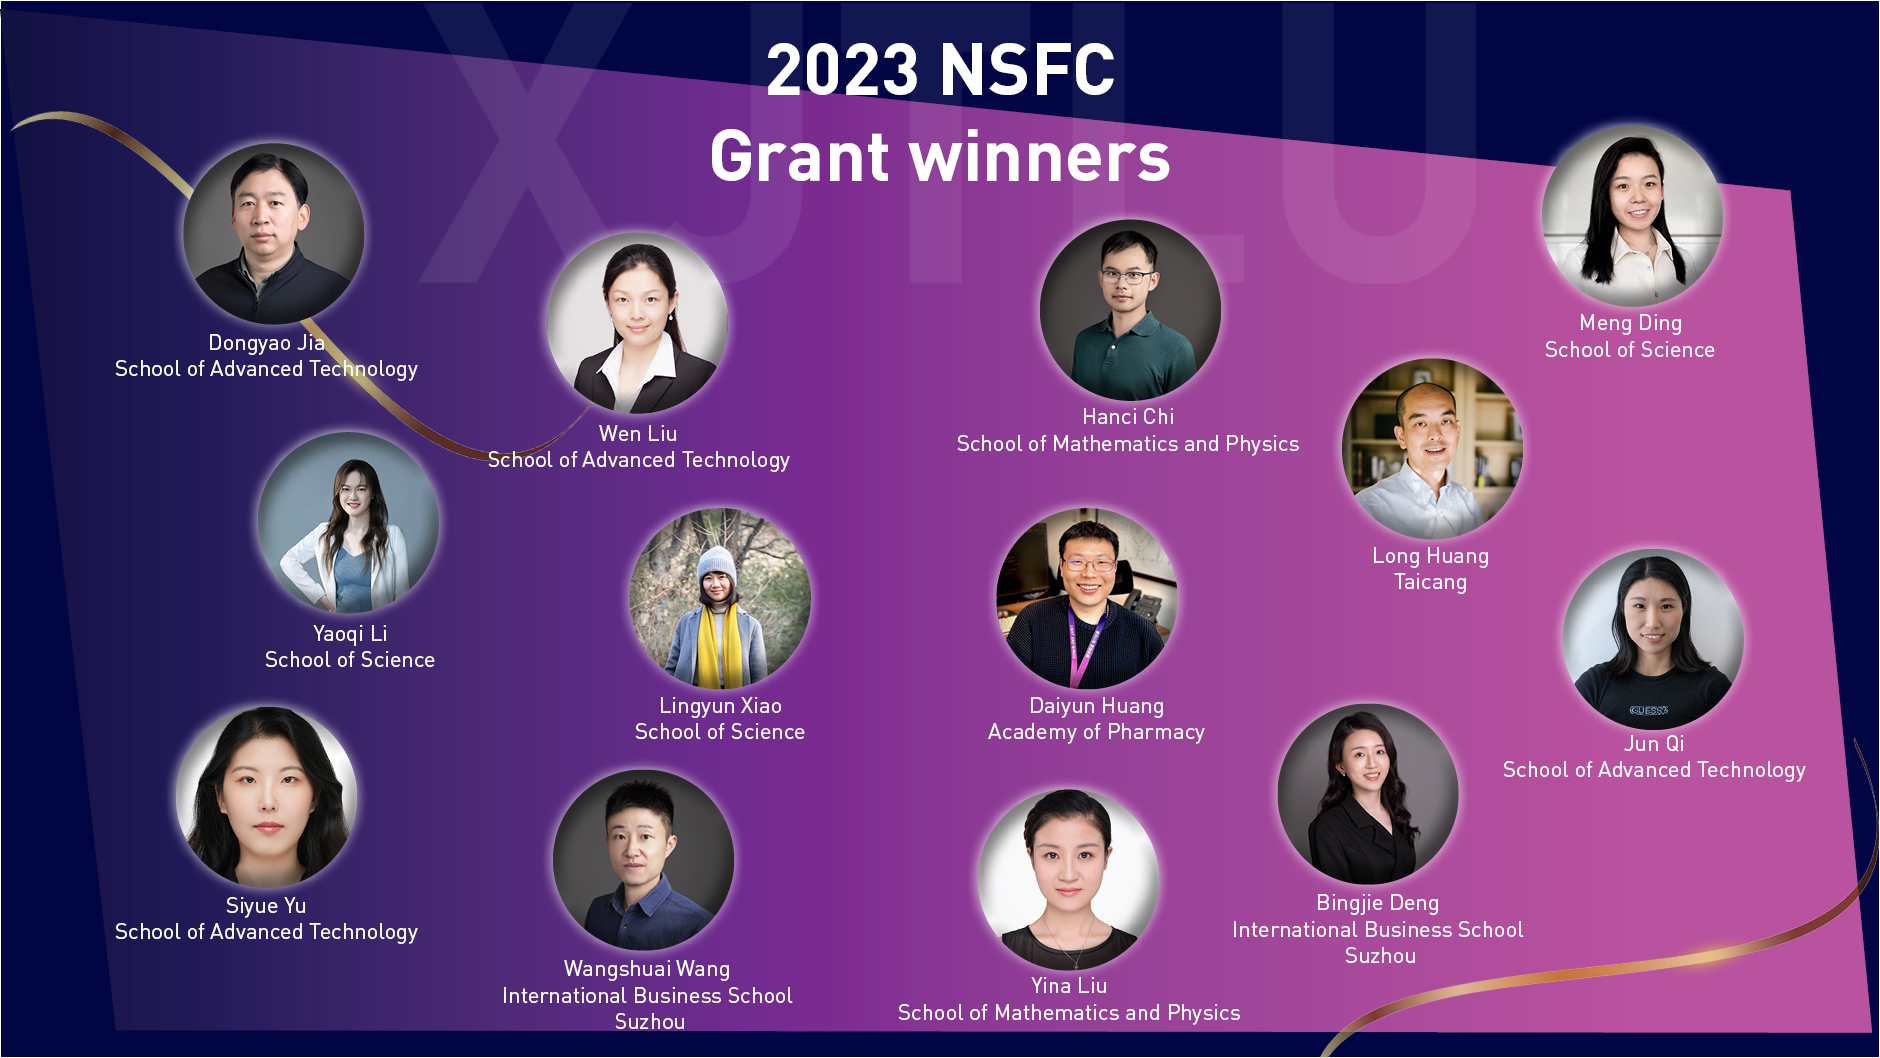 Multiple XJTLU projects win grants awarded by NSFC in 2023